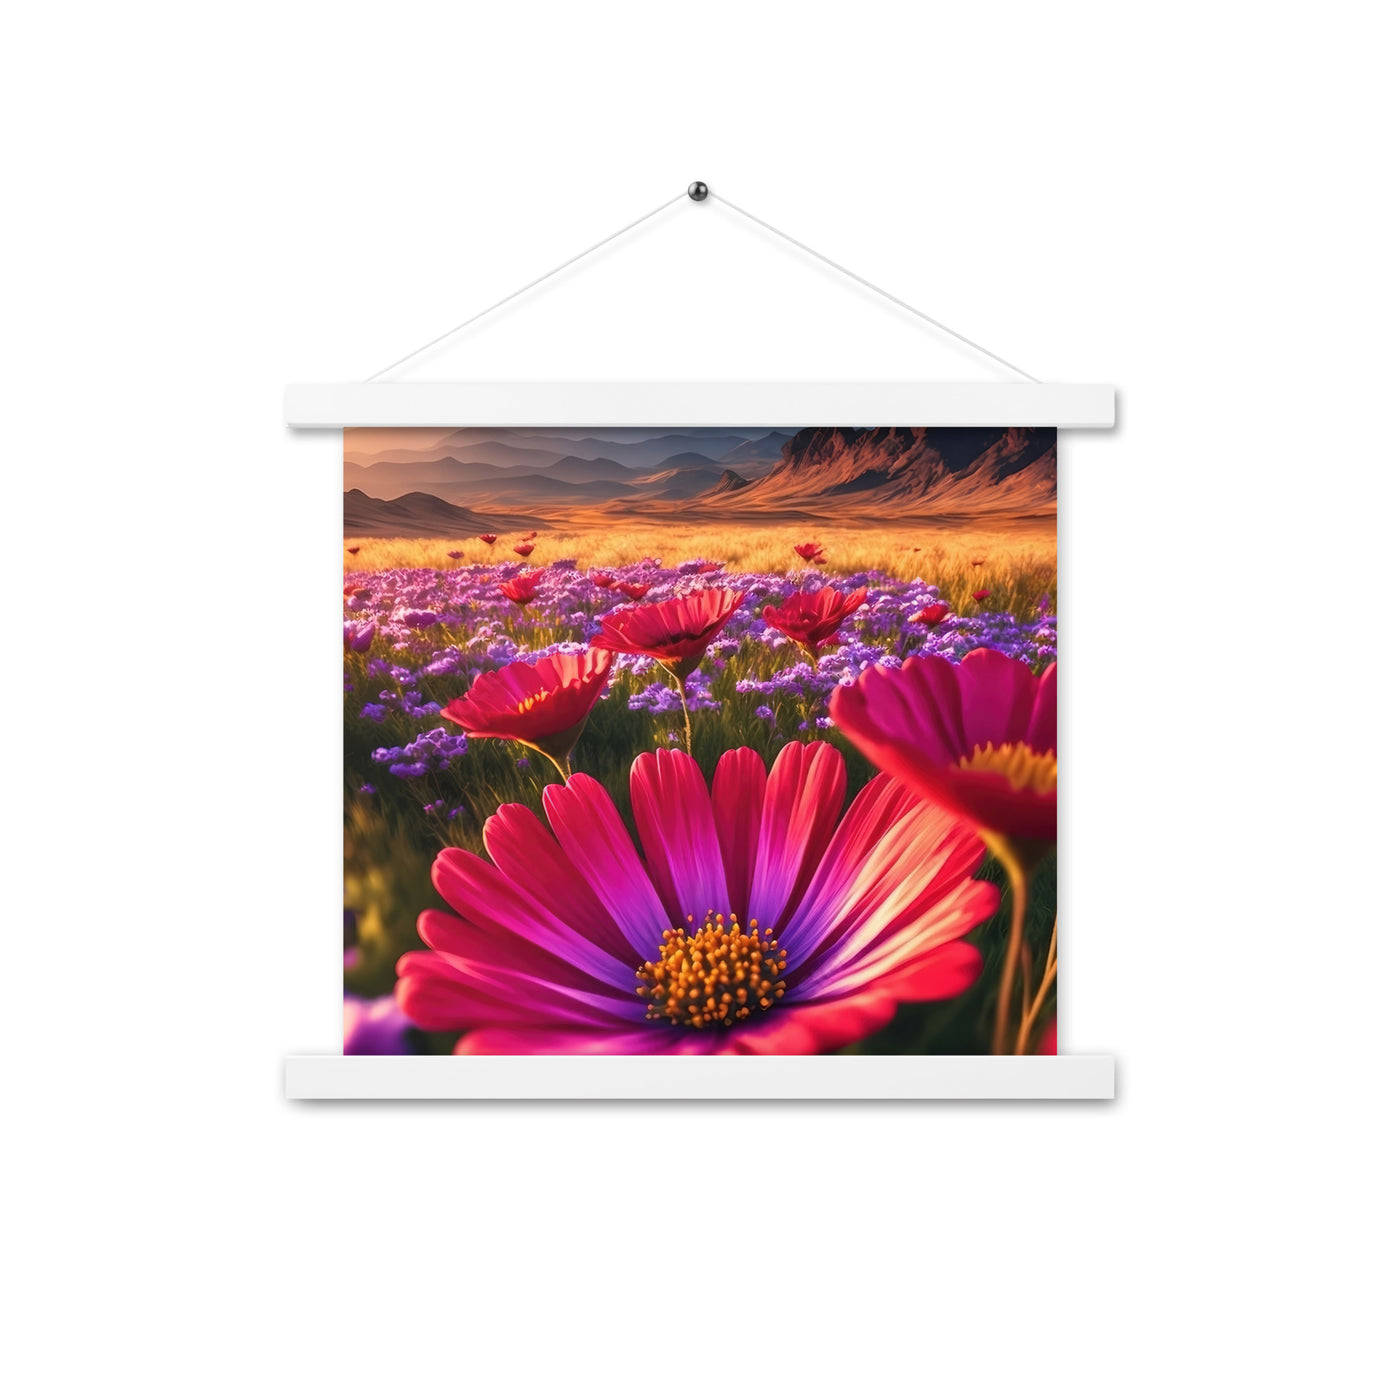 Wünderschöne Blumen und Berge im Hintergrund - Premium Poster mit Aufhängung berge xxx 35.6 x 35.6 cm